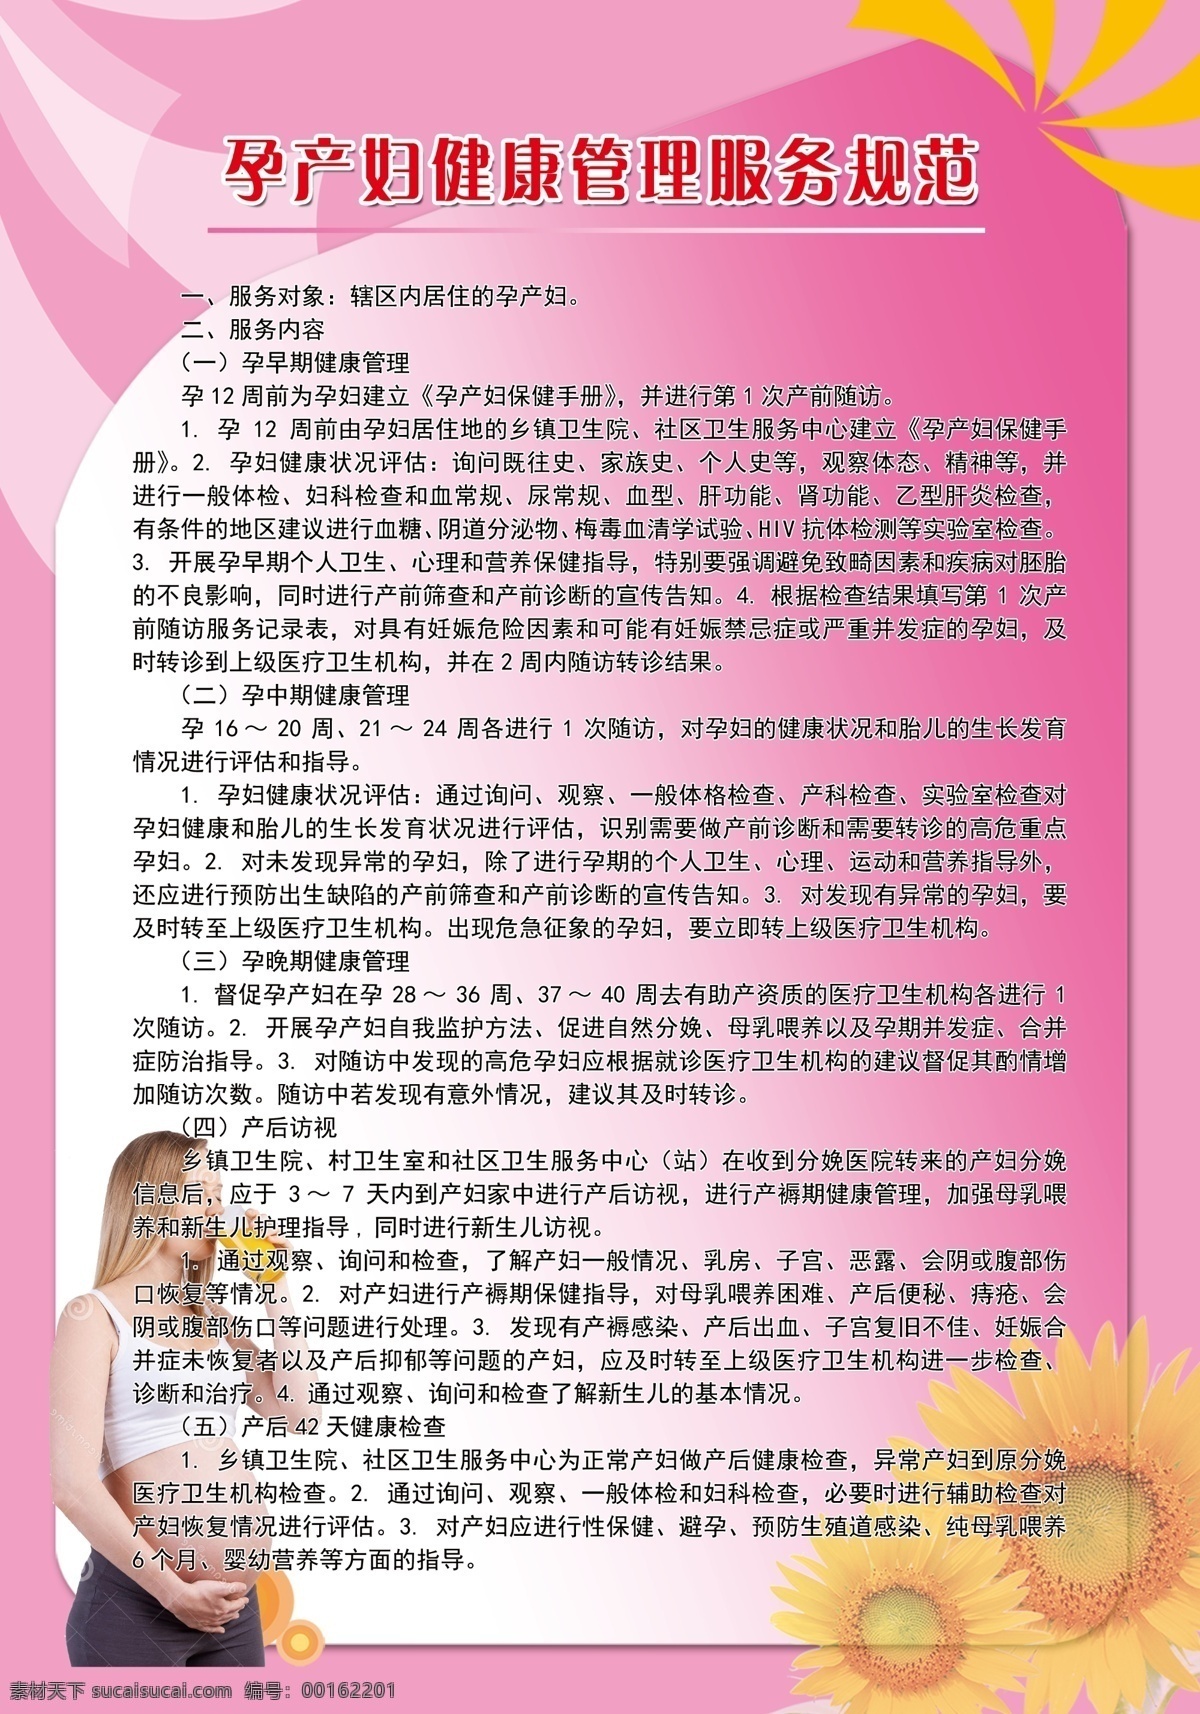 孕产妇 健康管理 服务规范 孕妇 产妇 服务 健康 管理 花朵 向日葵 粉色 粉红色背景 玫红渐变 分层